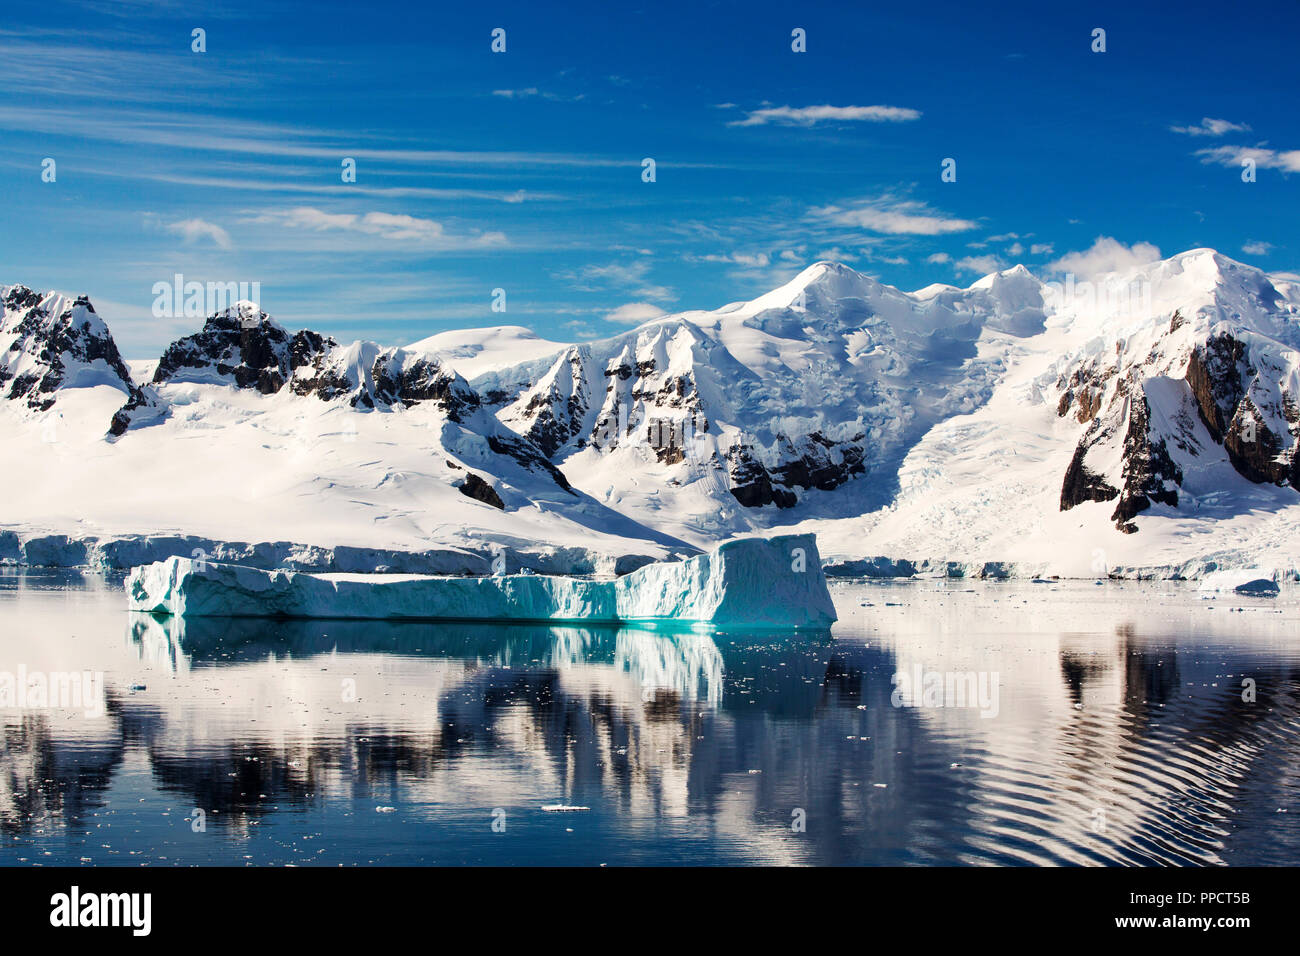 Die gerlache Strait trennt das Palmer Archipel von der Antarktischen Halbinsel aus Anvers Island. Die antartic Peninsula ist eine der schnellsten Erwärmung Gebiete des Planeten. Stockfoto